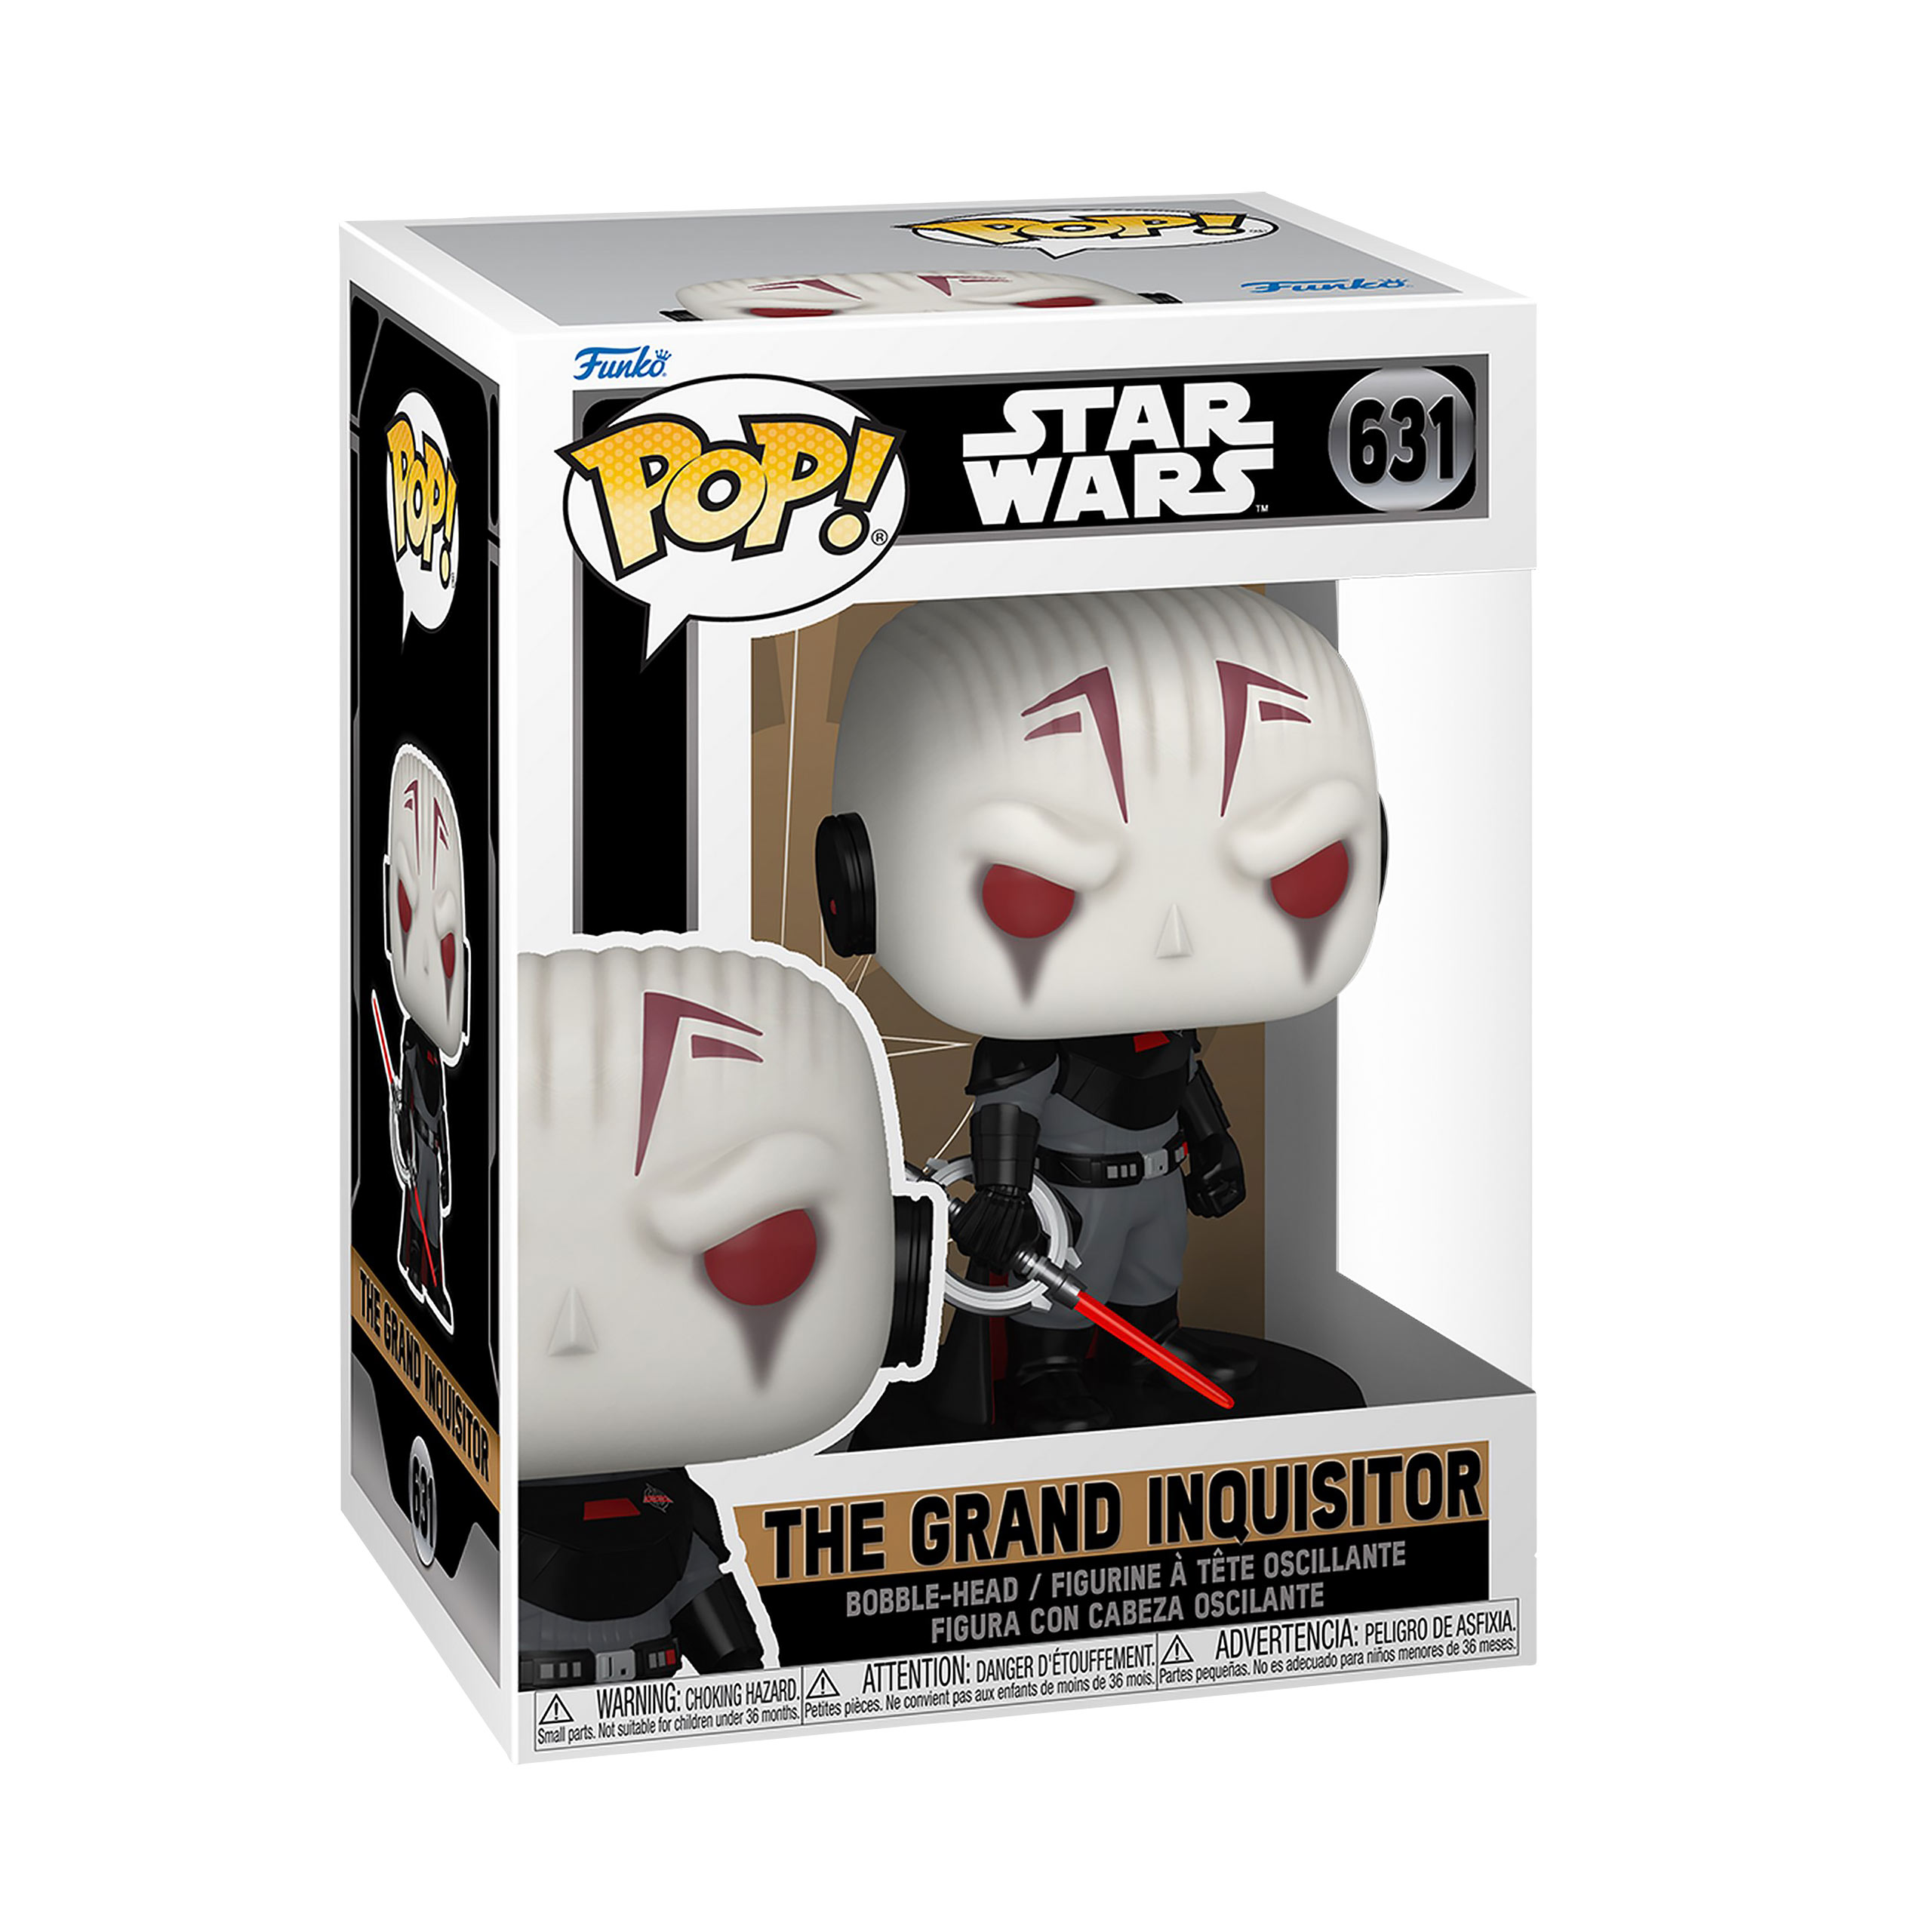 Star Wars Obi-Wan Kenobi - Grand Inquisitor Funko Pop Bobblehead Figure